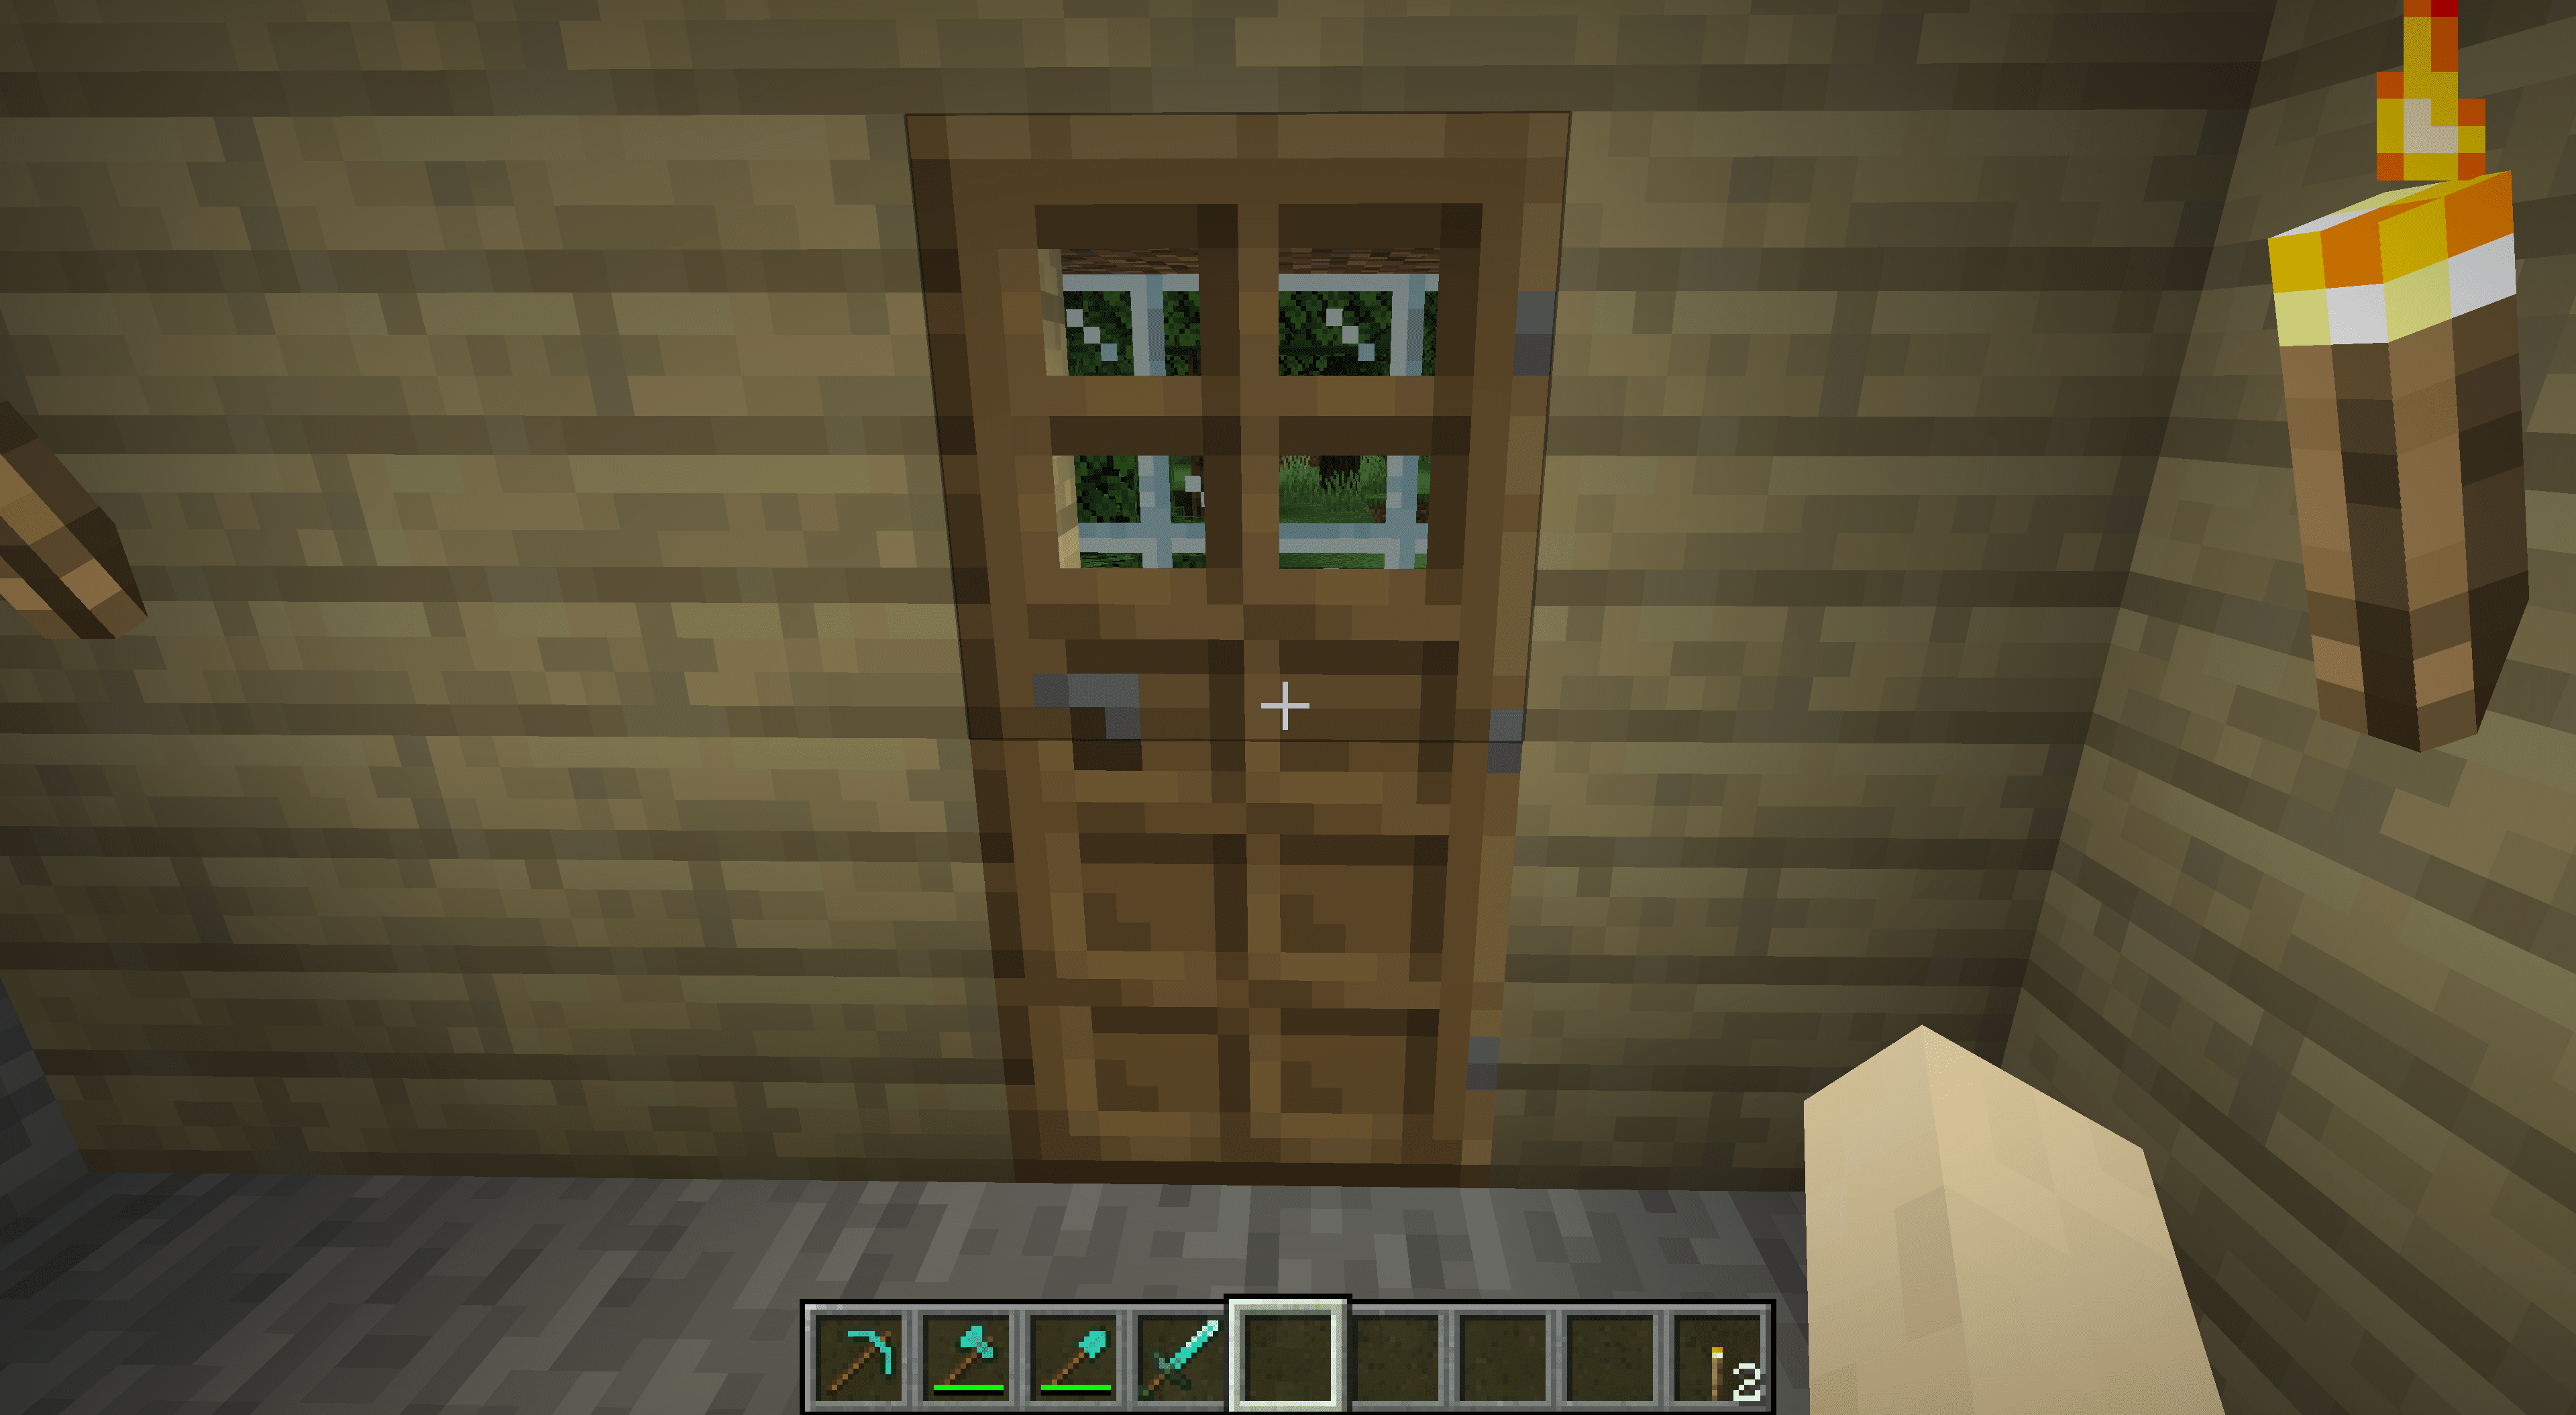 Dveře vedoucí do dolu v Minecraftu.